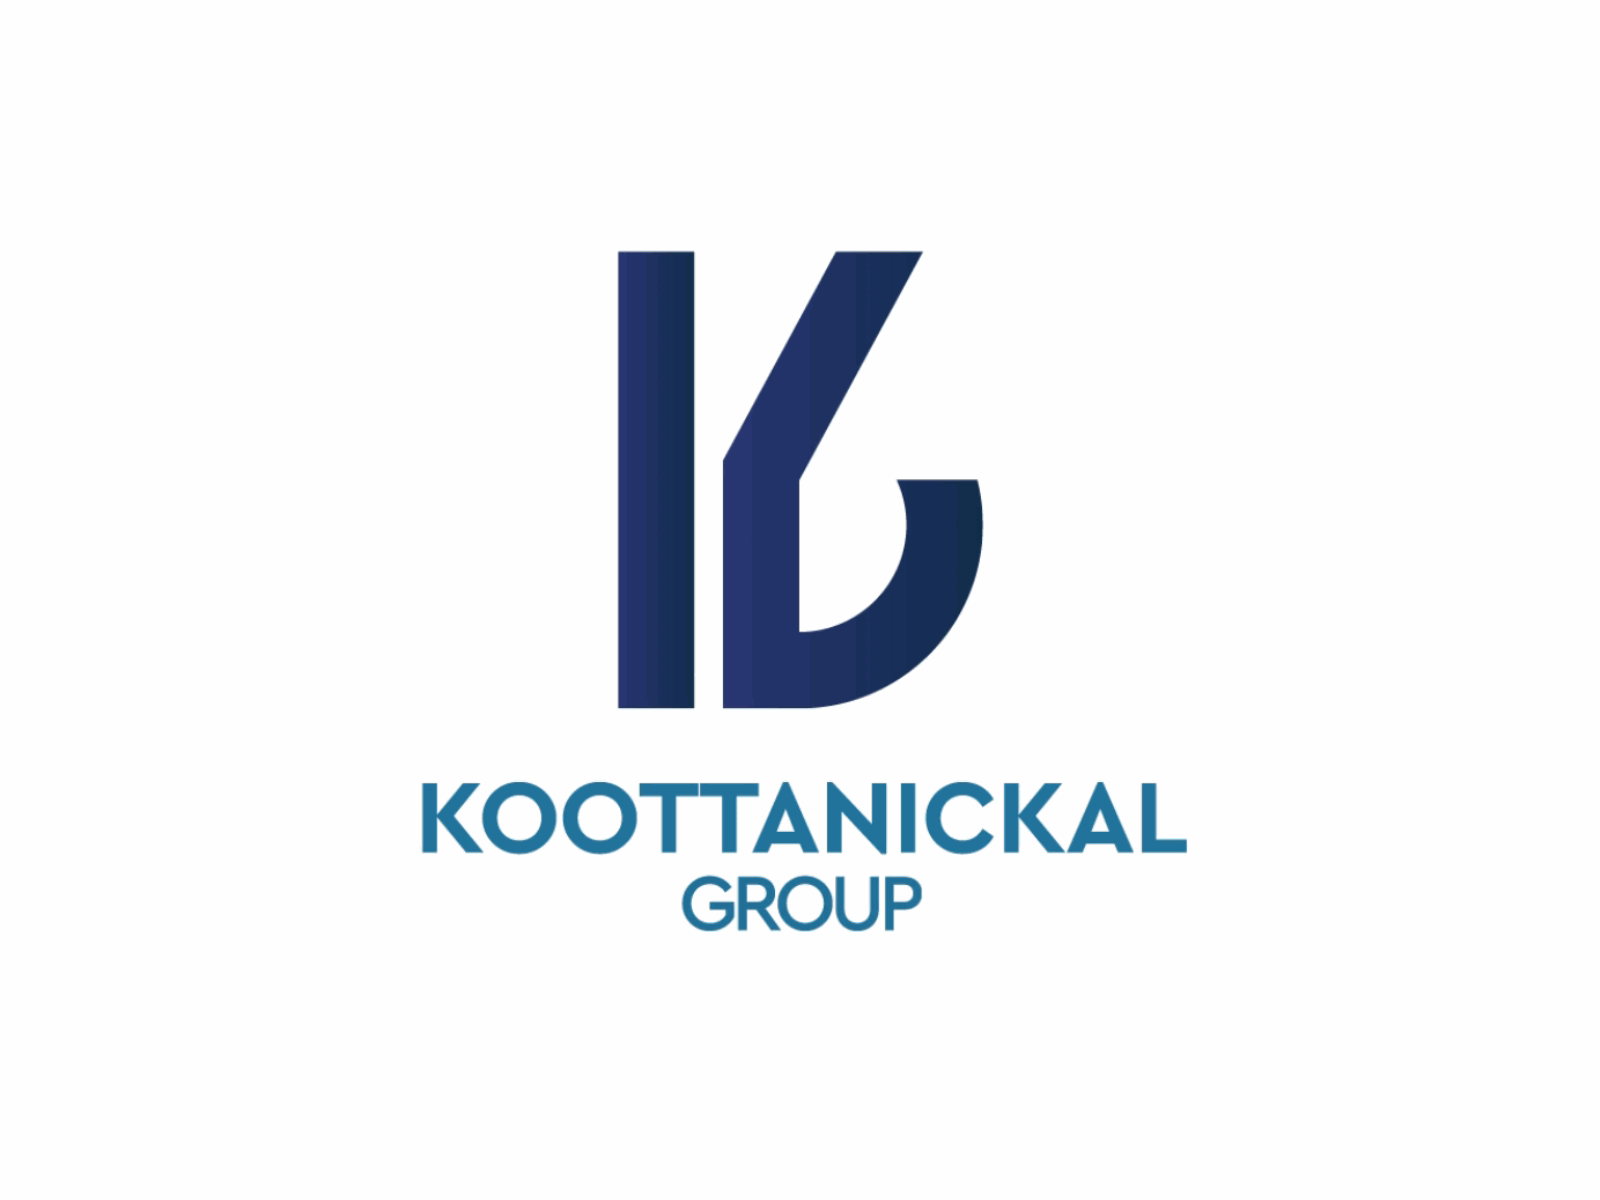 Logo Animation for Kootanikkal Group 2d animation animated logo intro logo animation logo motion logoanimation motion graphics motion logo reveal